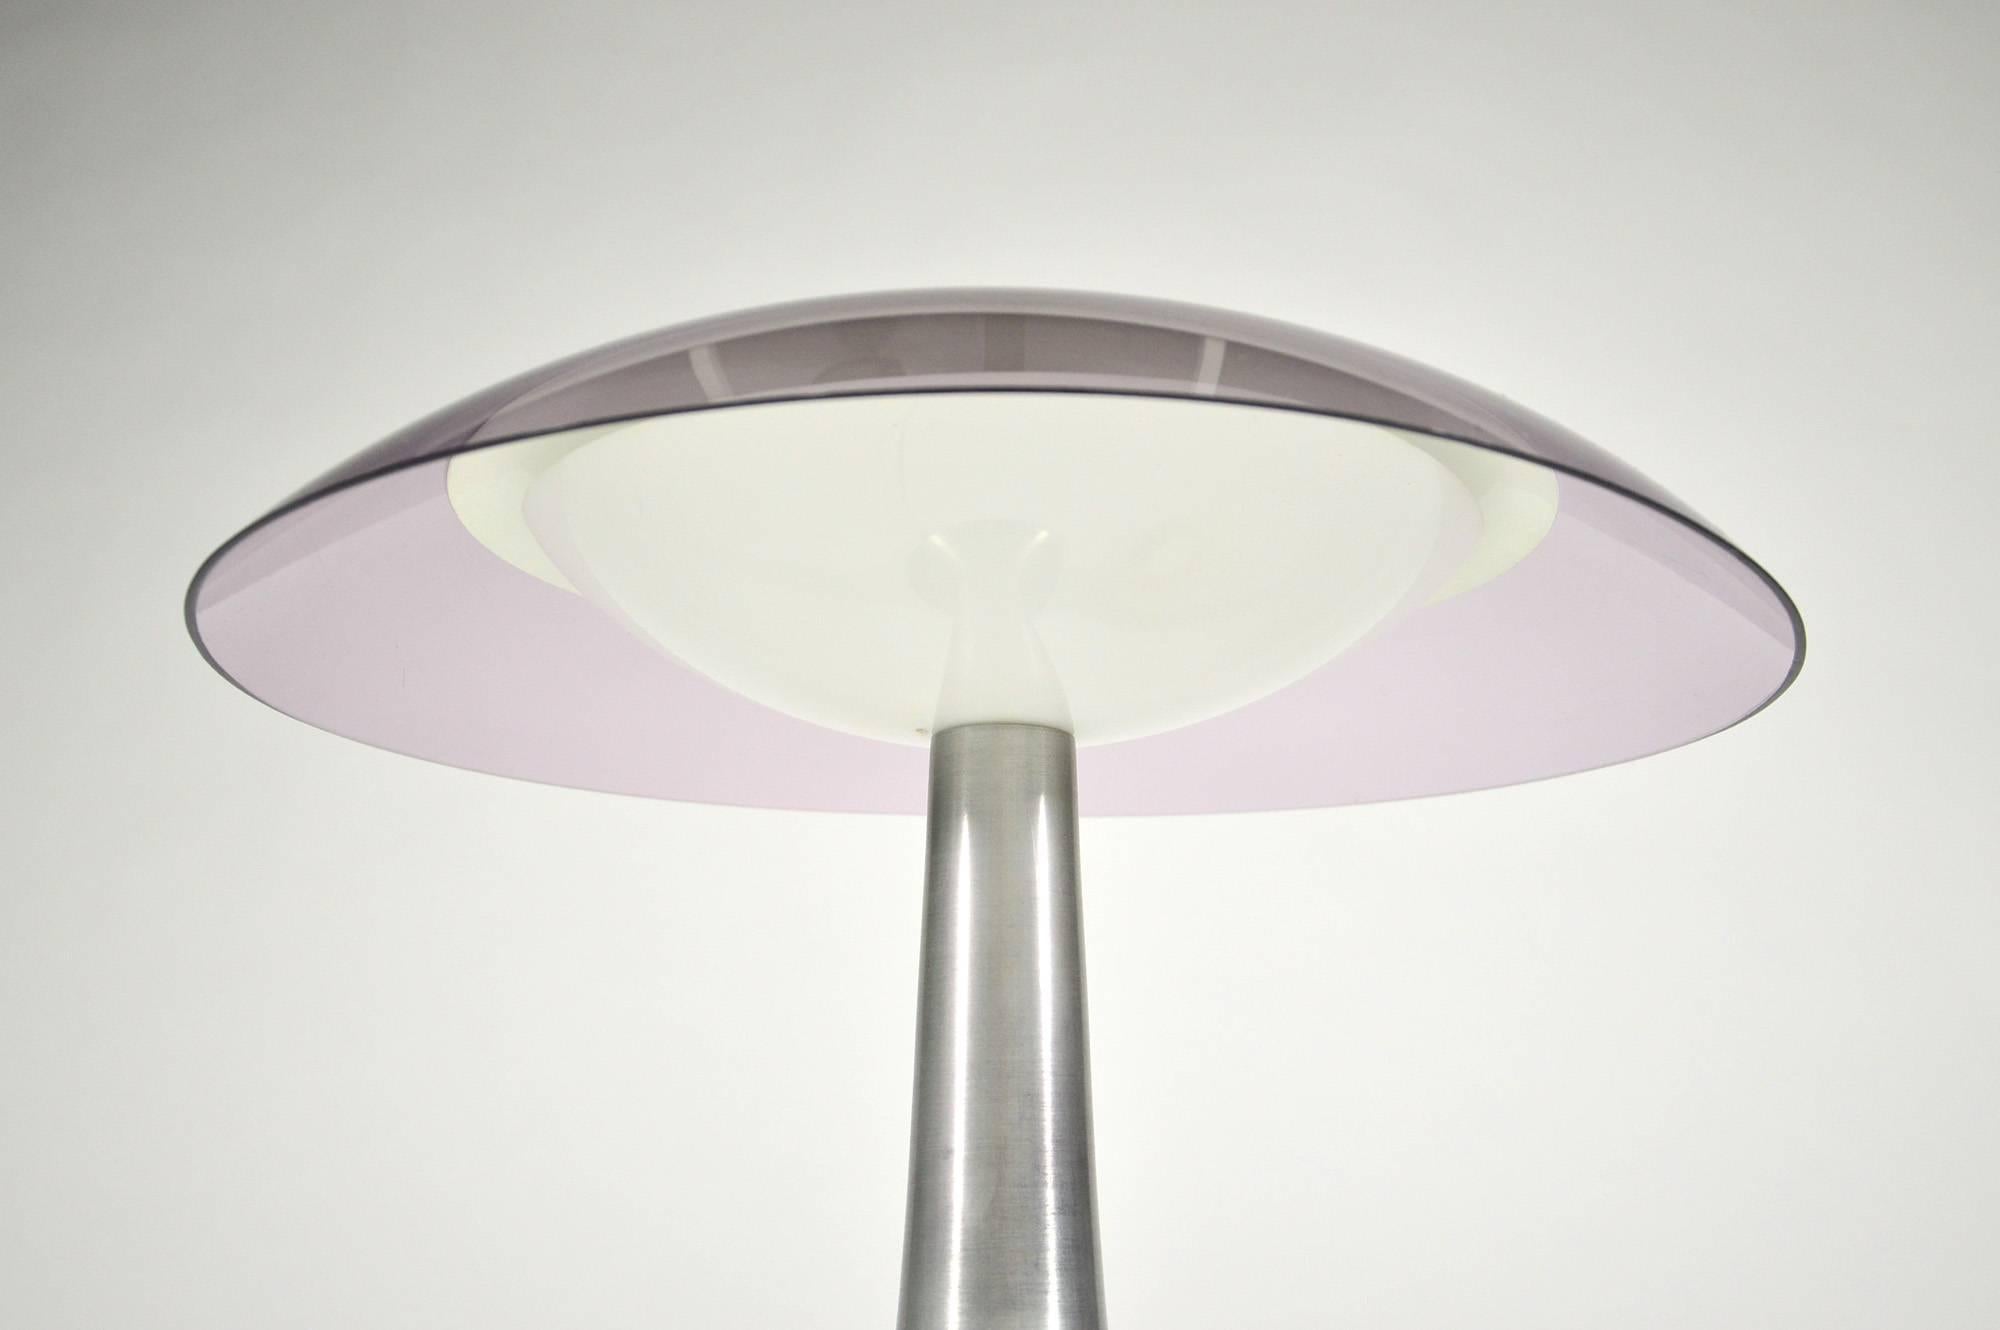 Stilux Milano Italian Table Lamp in Lucite and Aluminium, circa 1960 For Sale 3